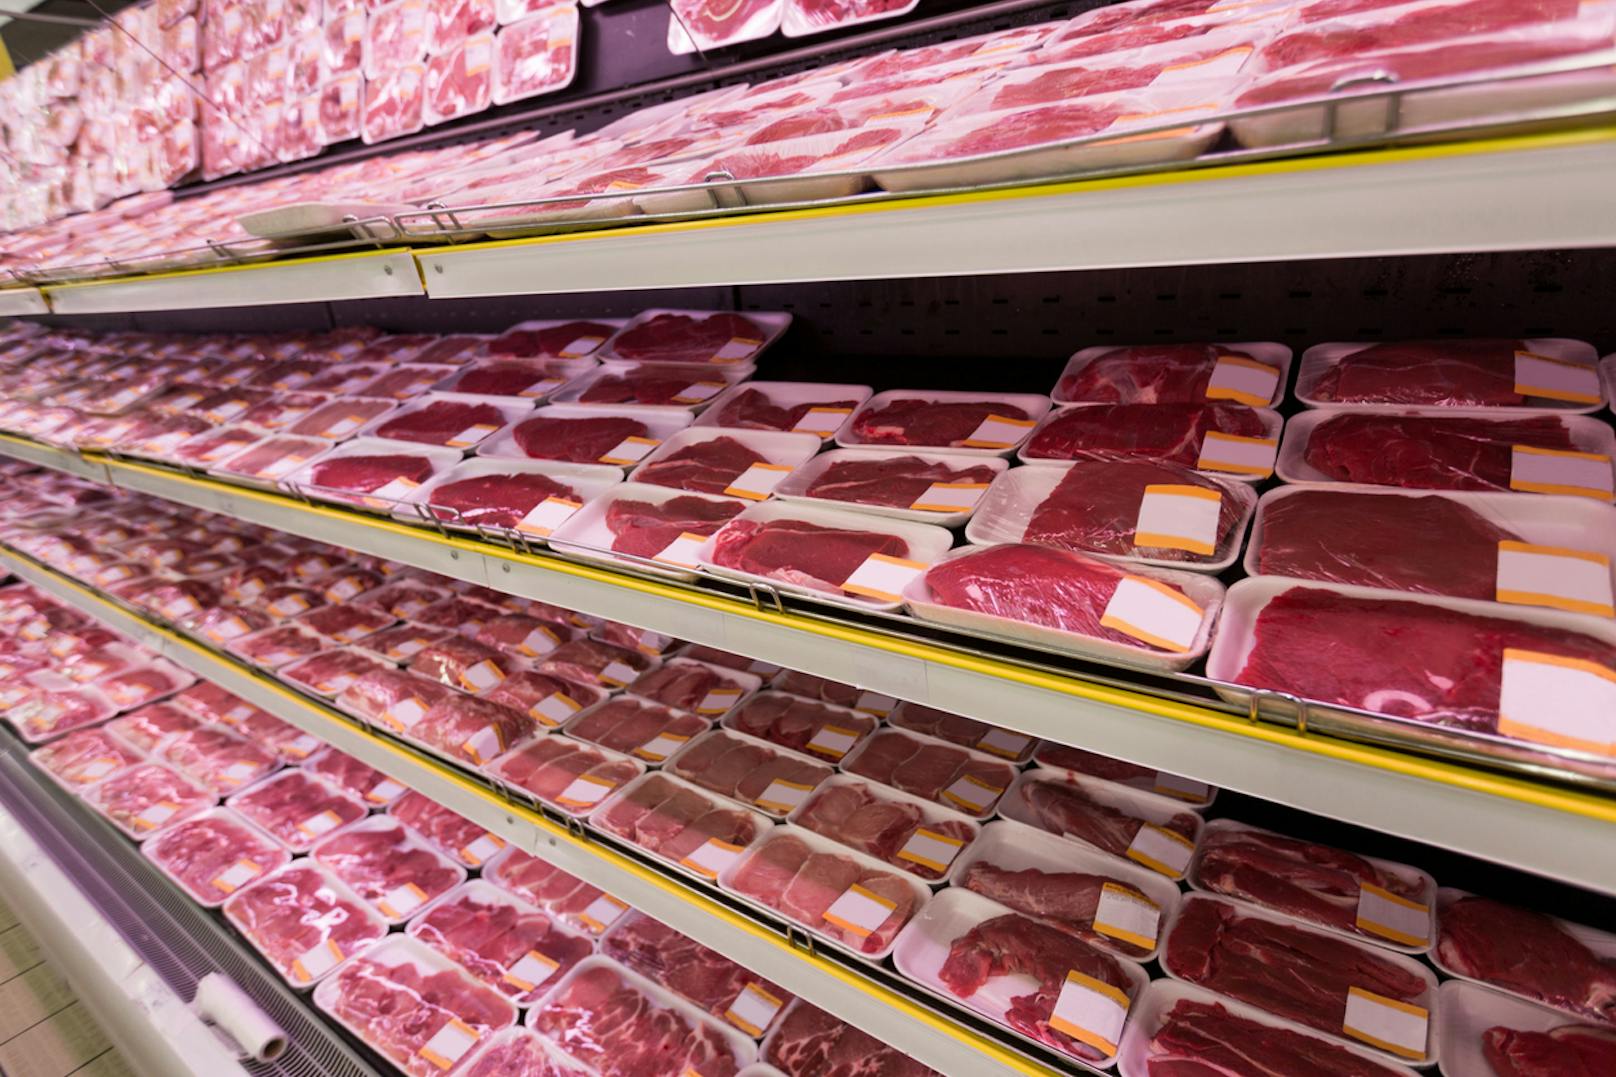 Weg von Billigfleisch und Massentierhaltung. Tierschutz- und Umweltschutzorganisationen fordern in Zeiten von Covid-19 mehr denn je einen Systemwechsel in der Fleischindustrie.